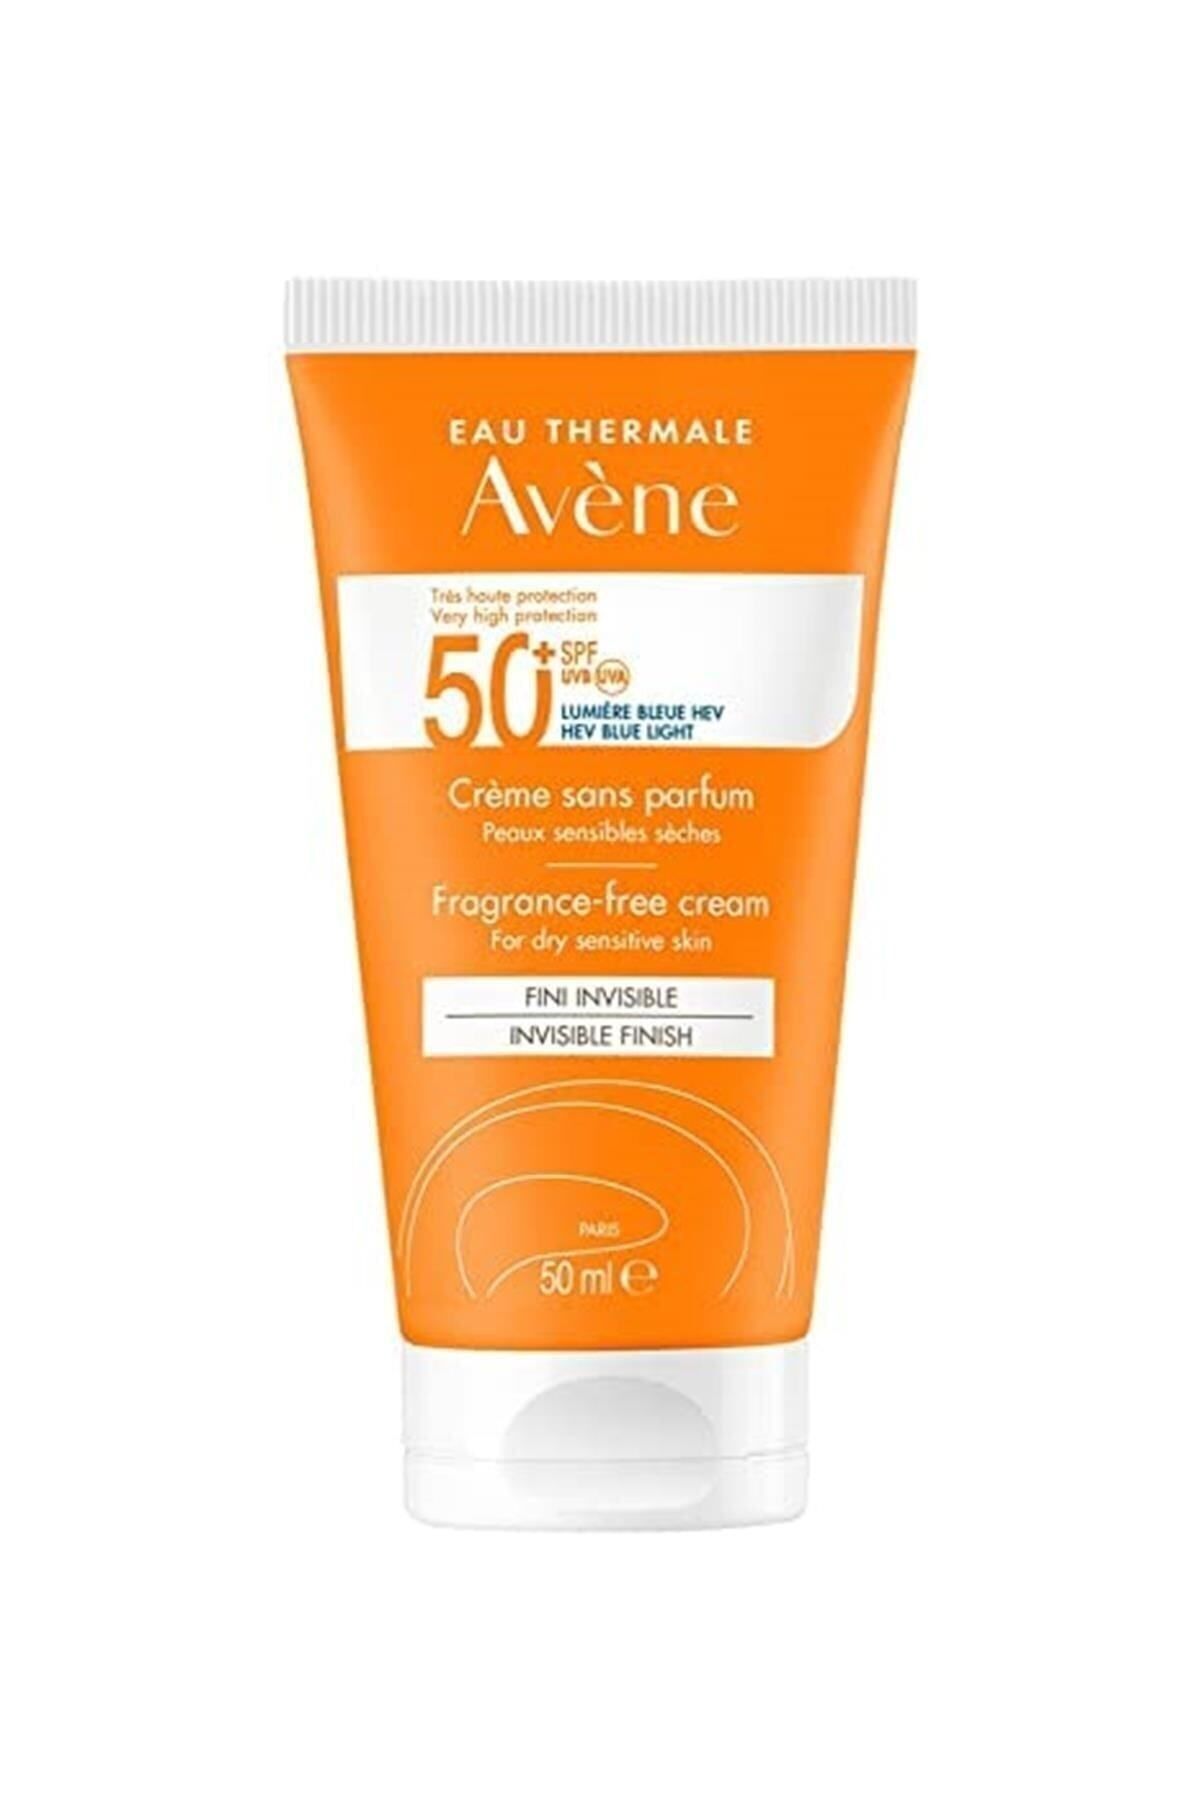 Avene Cream SPF 50+ Kuru Ciltler için Parfümsüz Yüksek Korumalı Güneş Kremi 50 ml